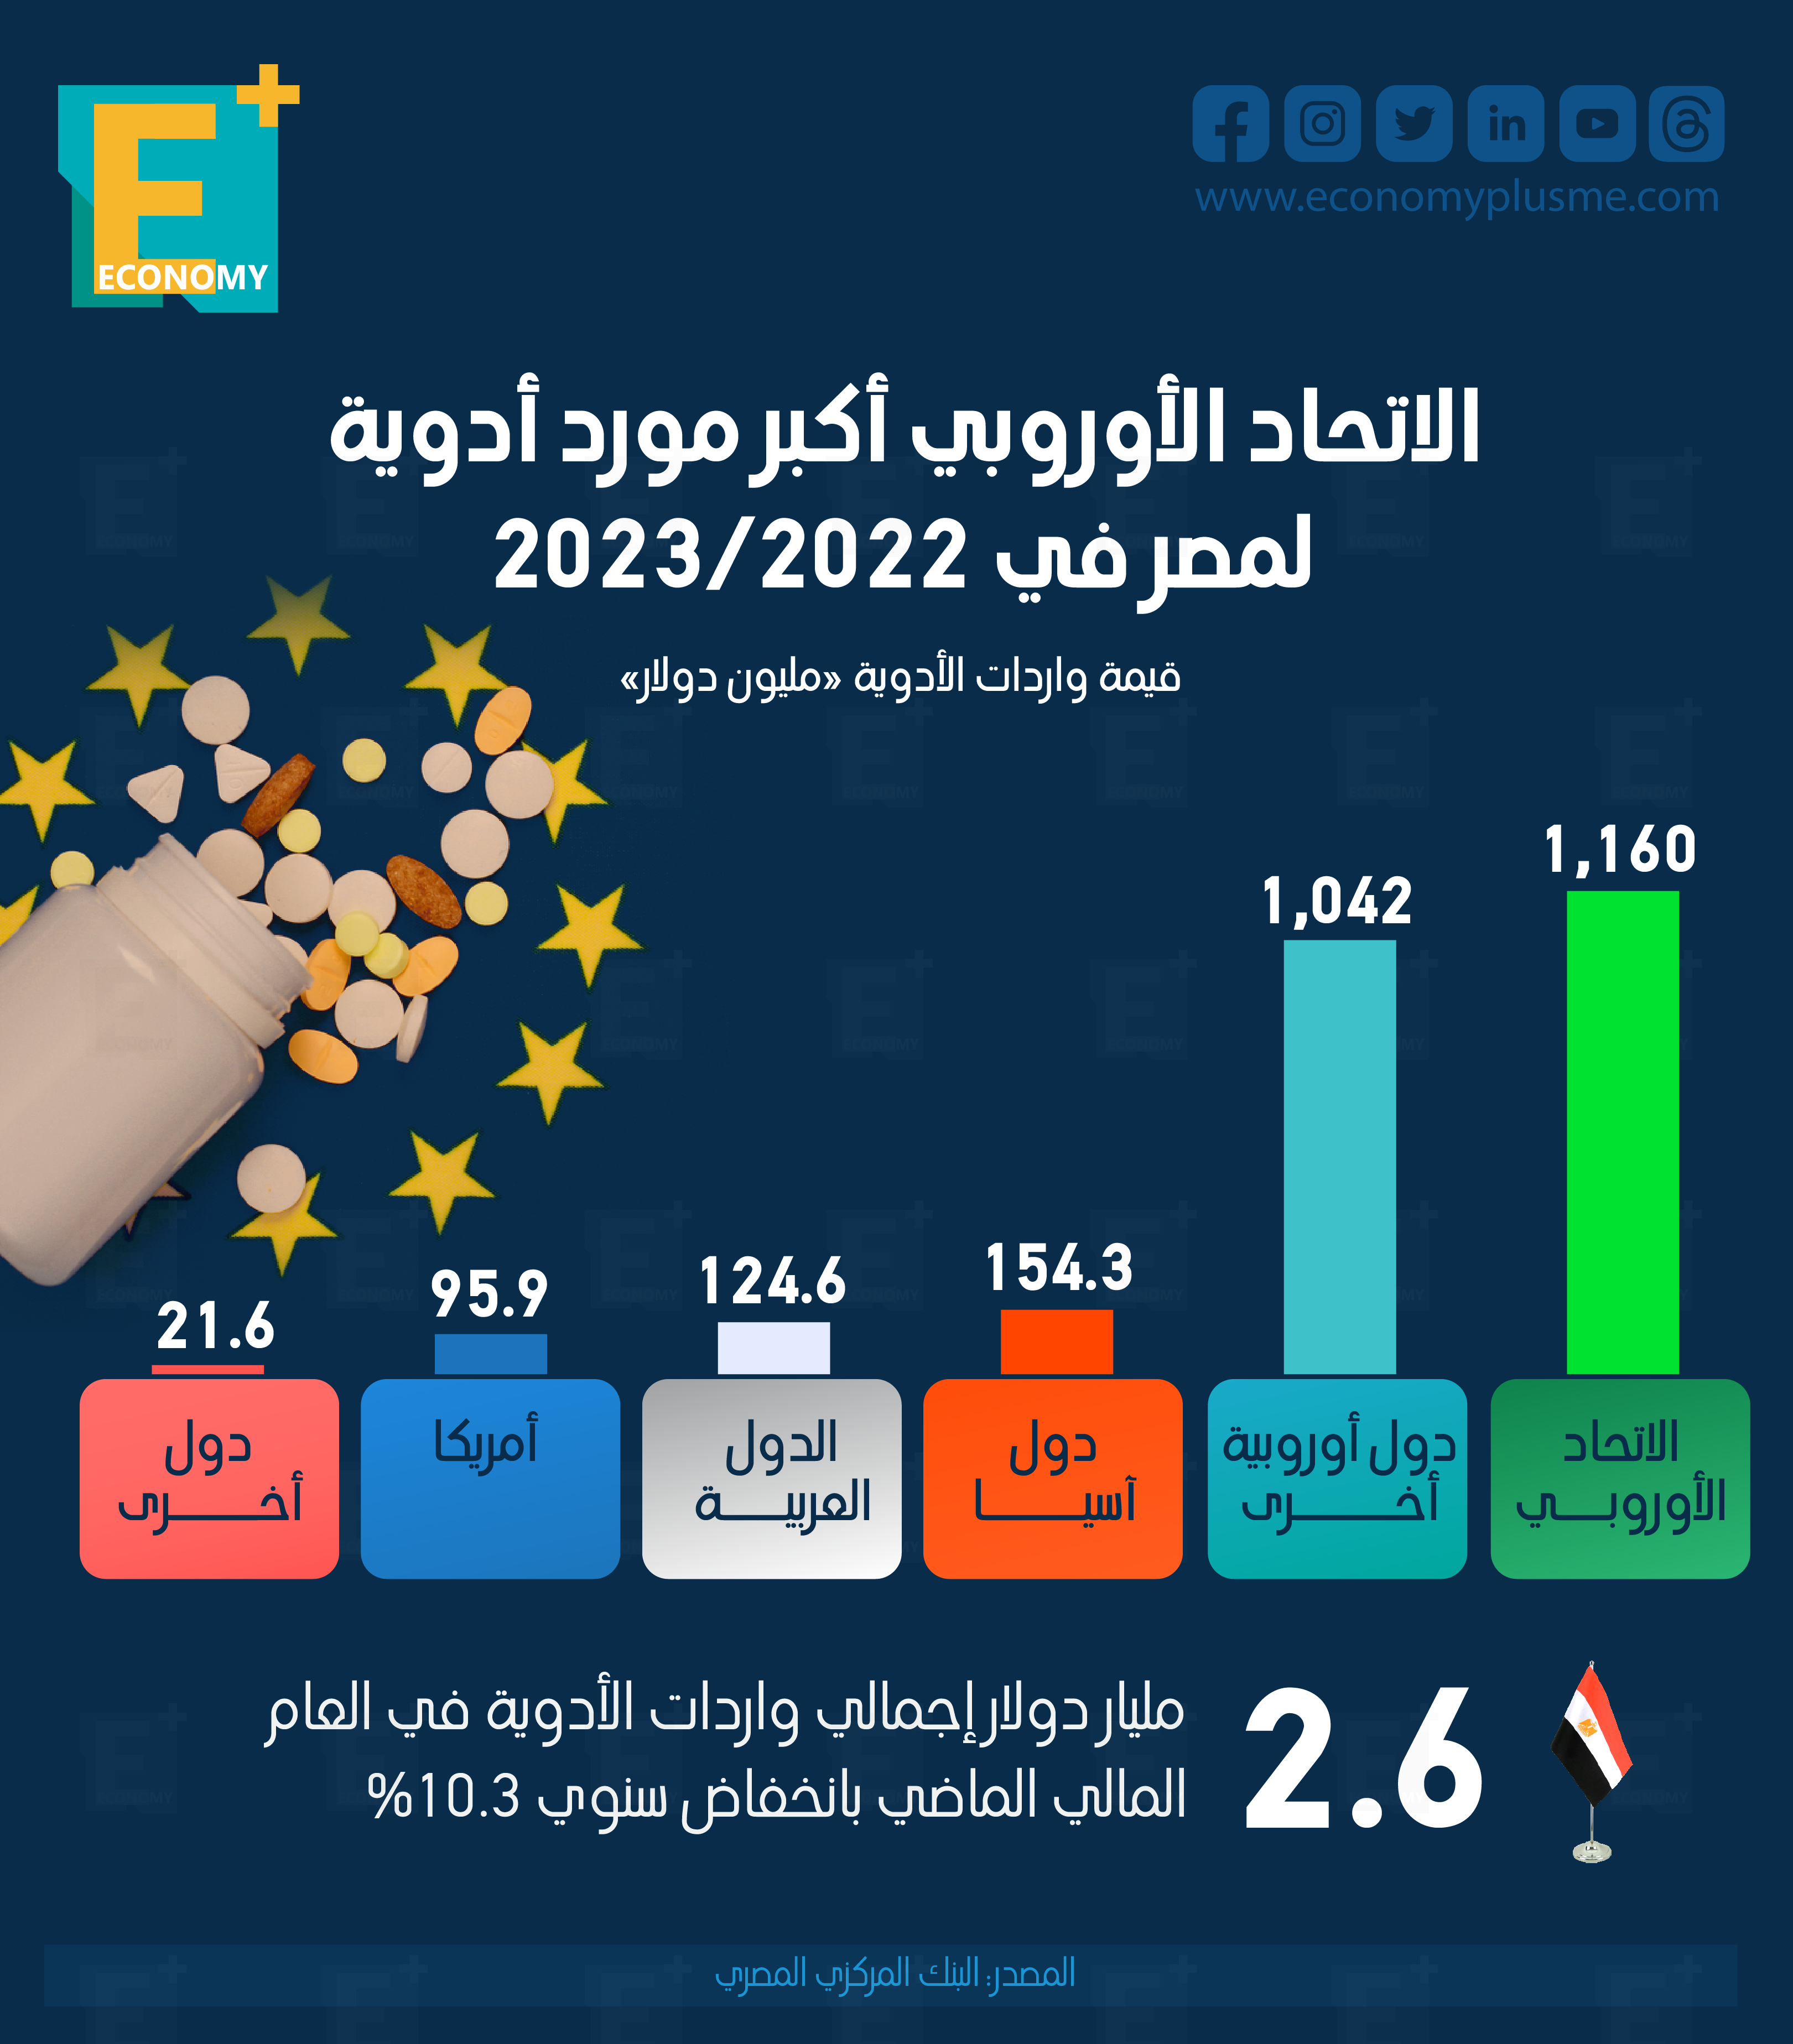 الاتحاد الأوروبي أكبر مورد أدوية لمصر في 2022/2023.